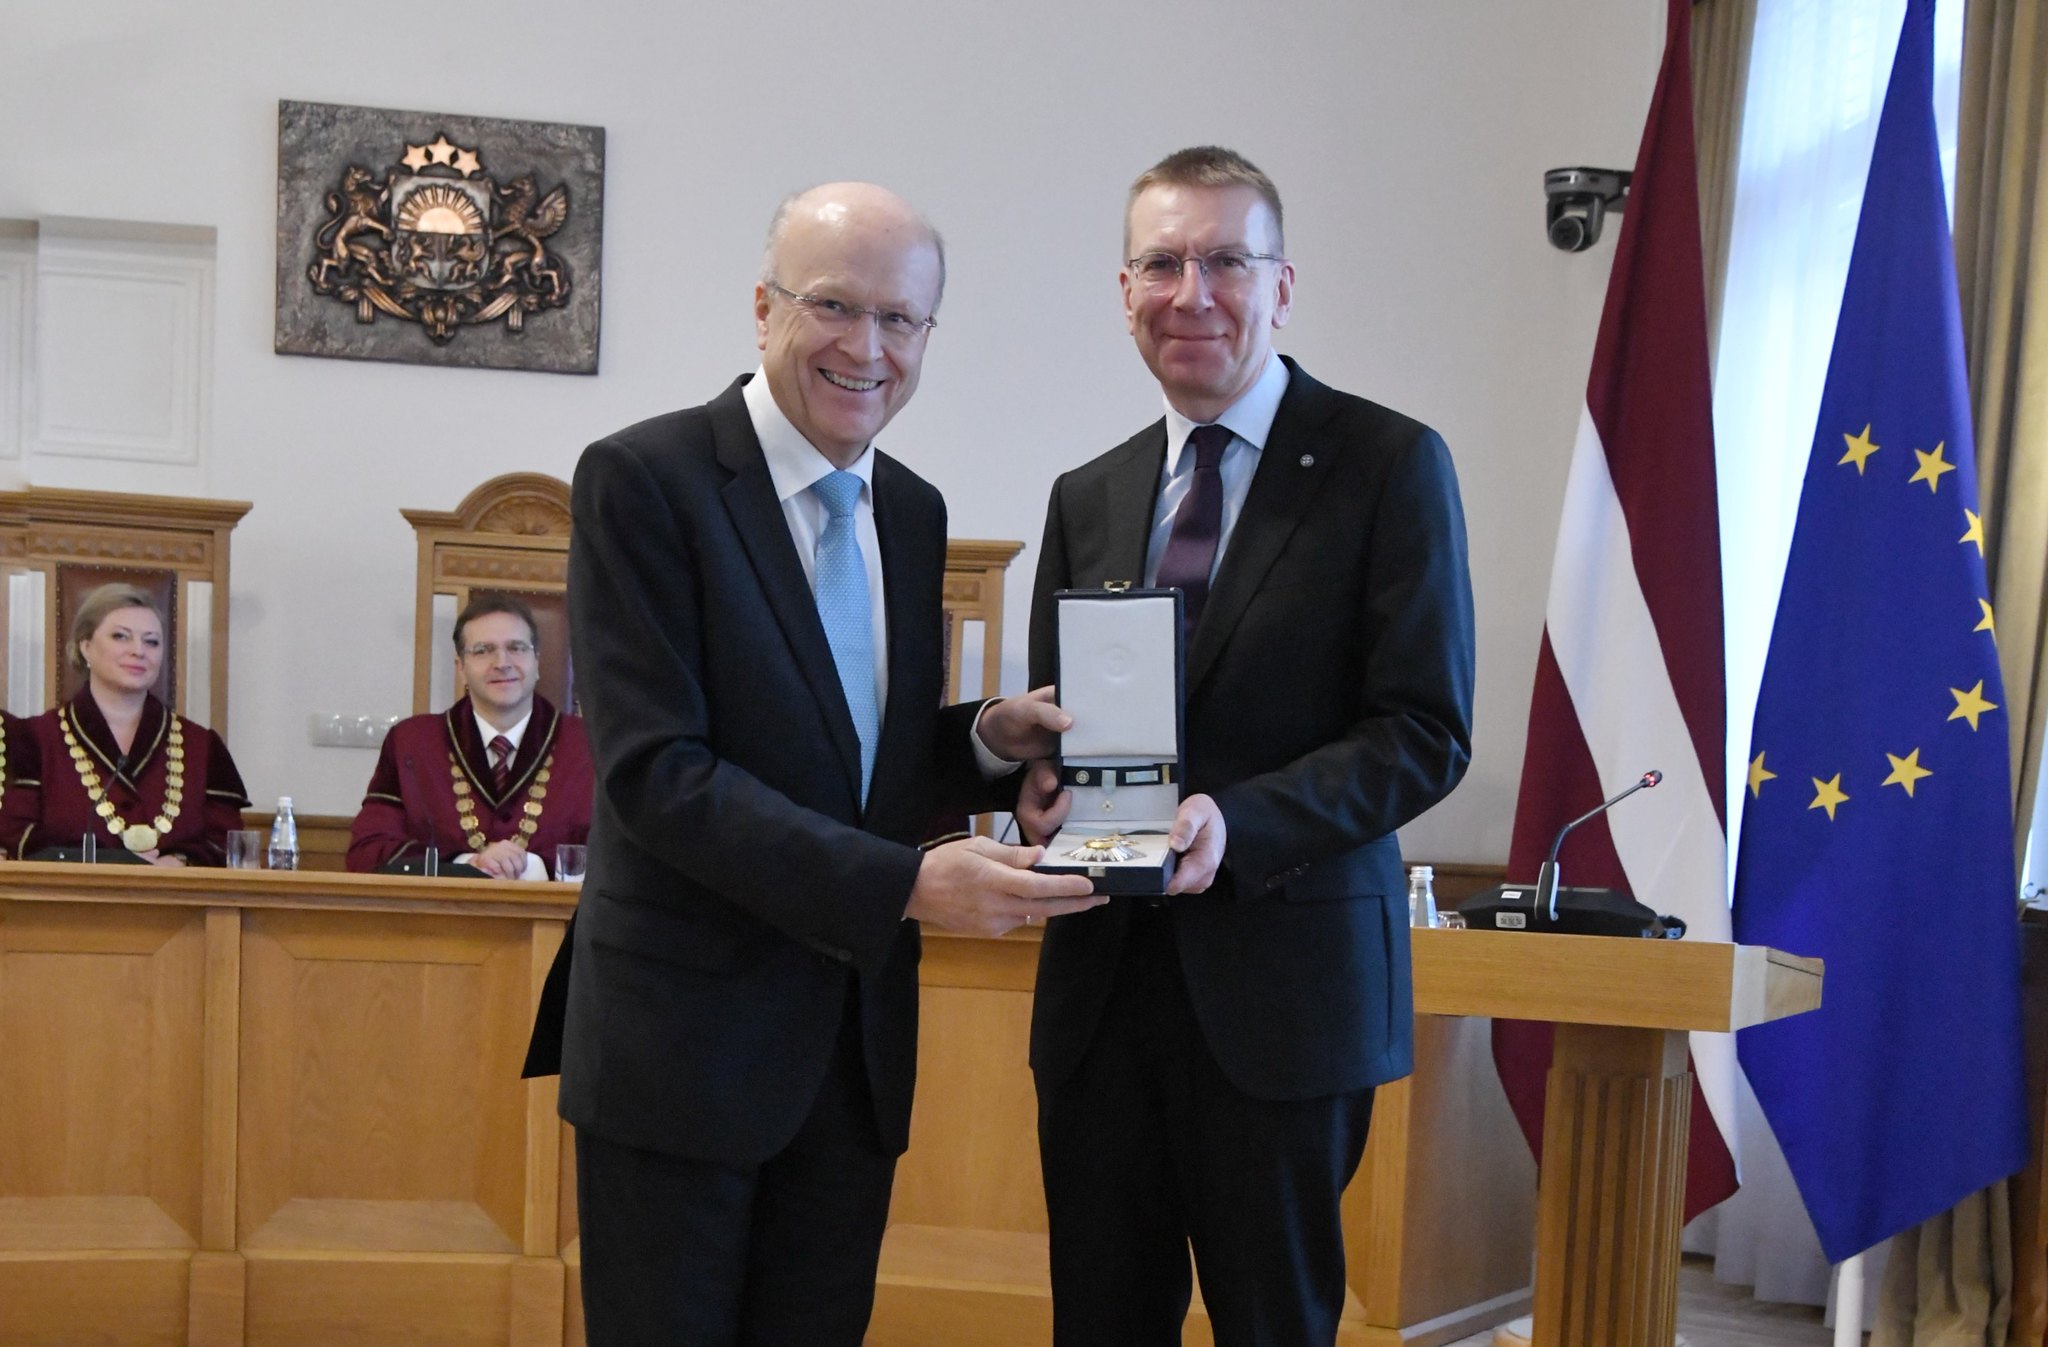 Valsts prezidents Edgars Rinkēvičs pasniedz Triju Zvaigžņu ordeni (II šķira) Eiropas Savienības Tiesas priekšsēdētājam Kūnam Lēnartsam (Koen Lenaerts).